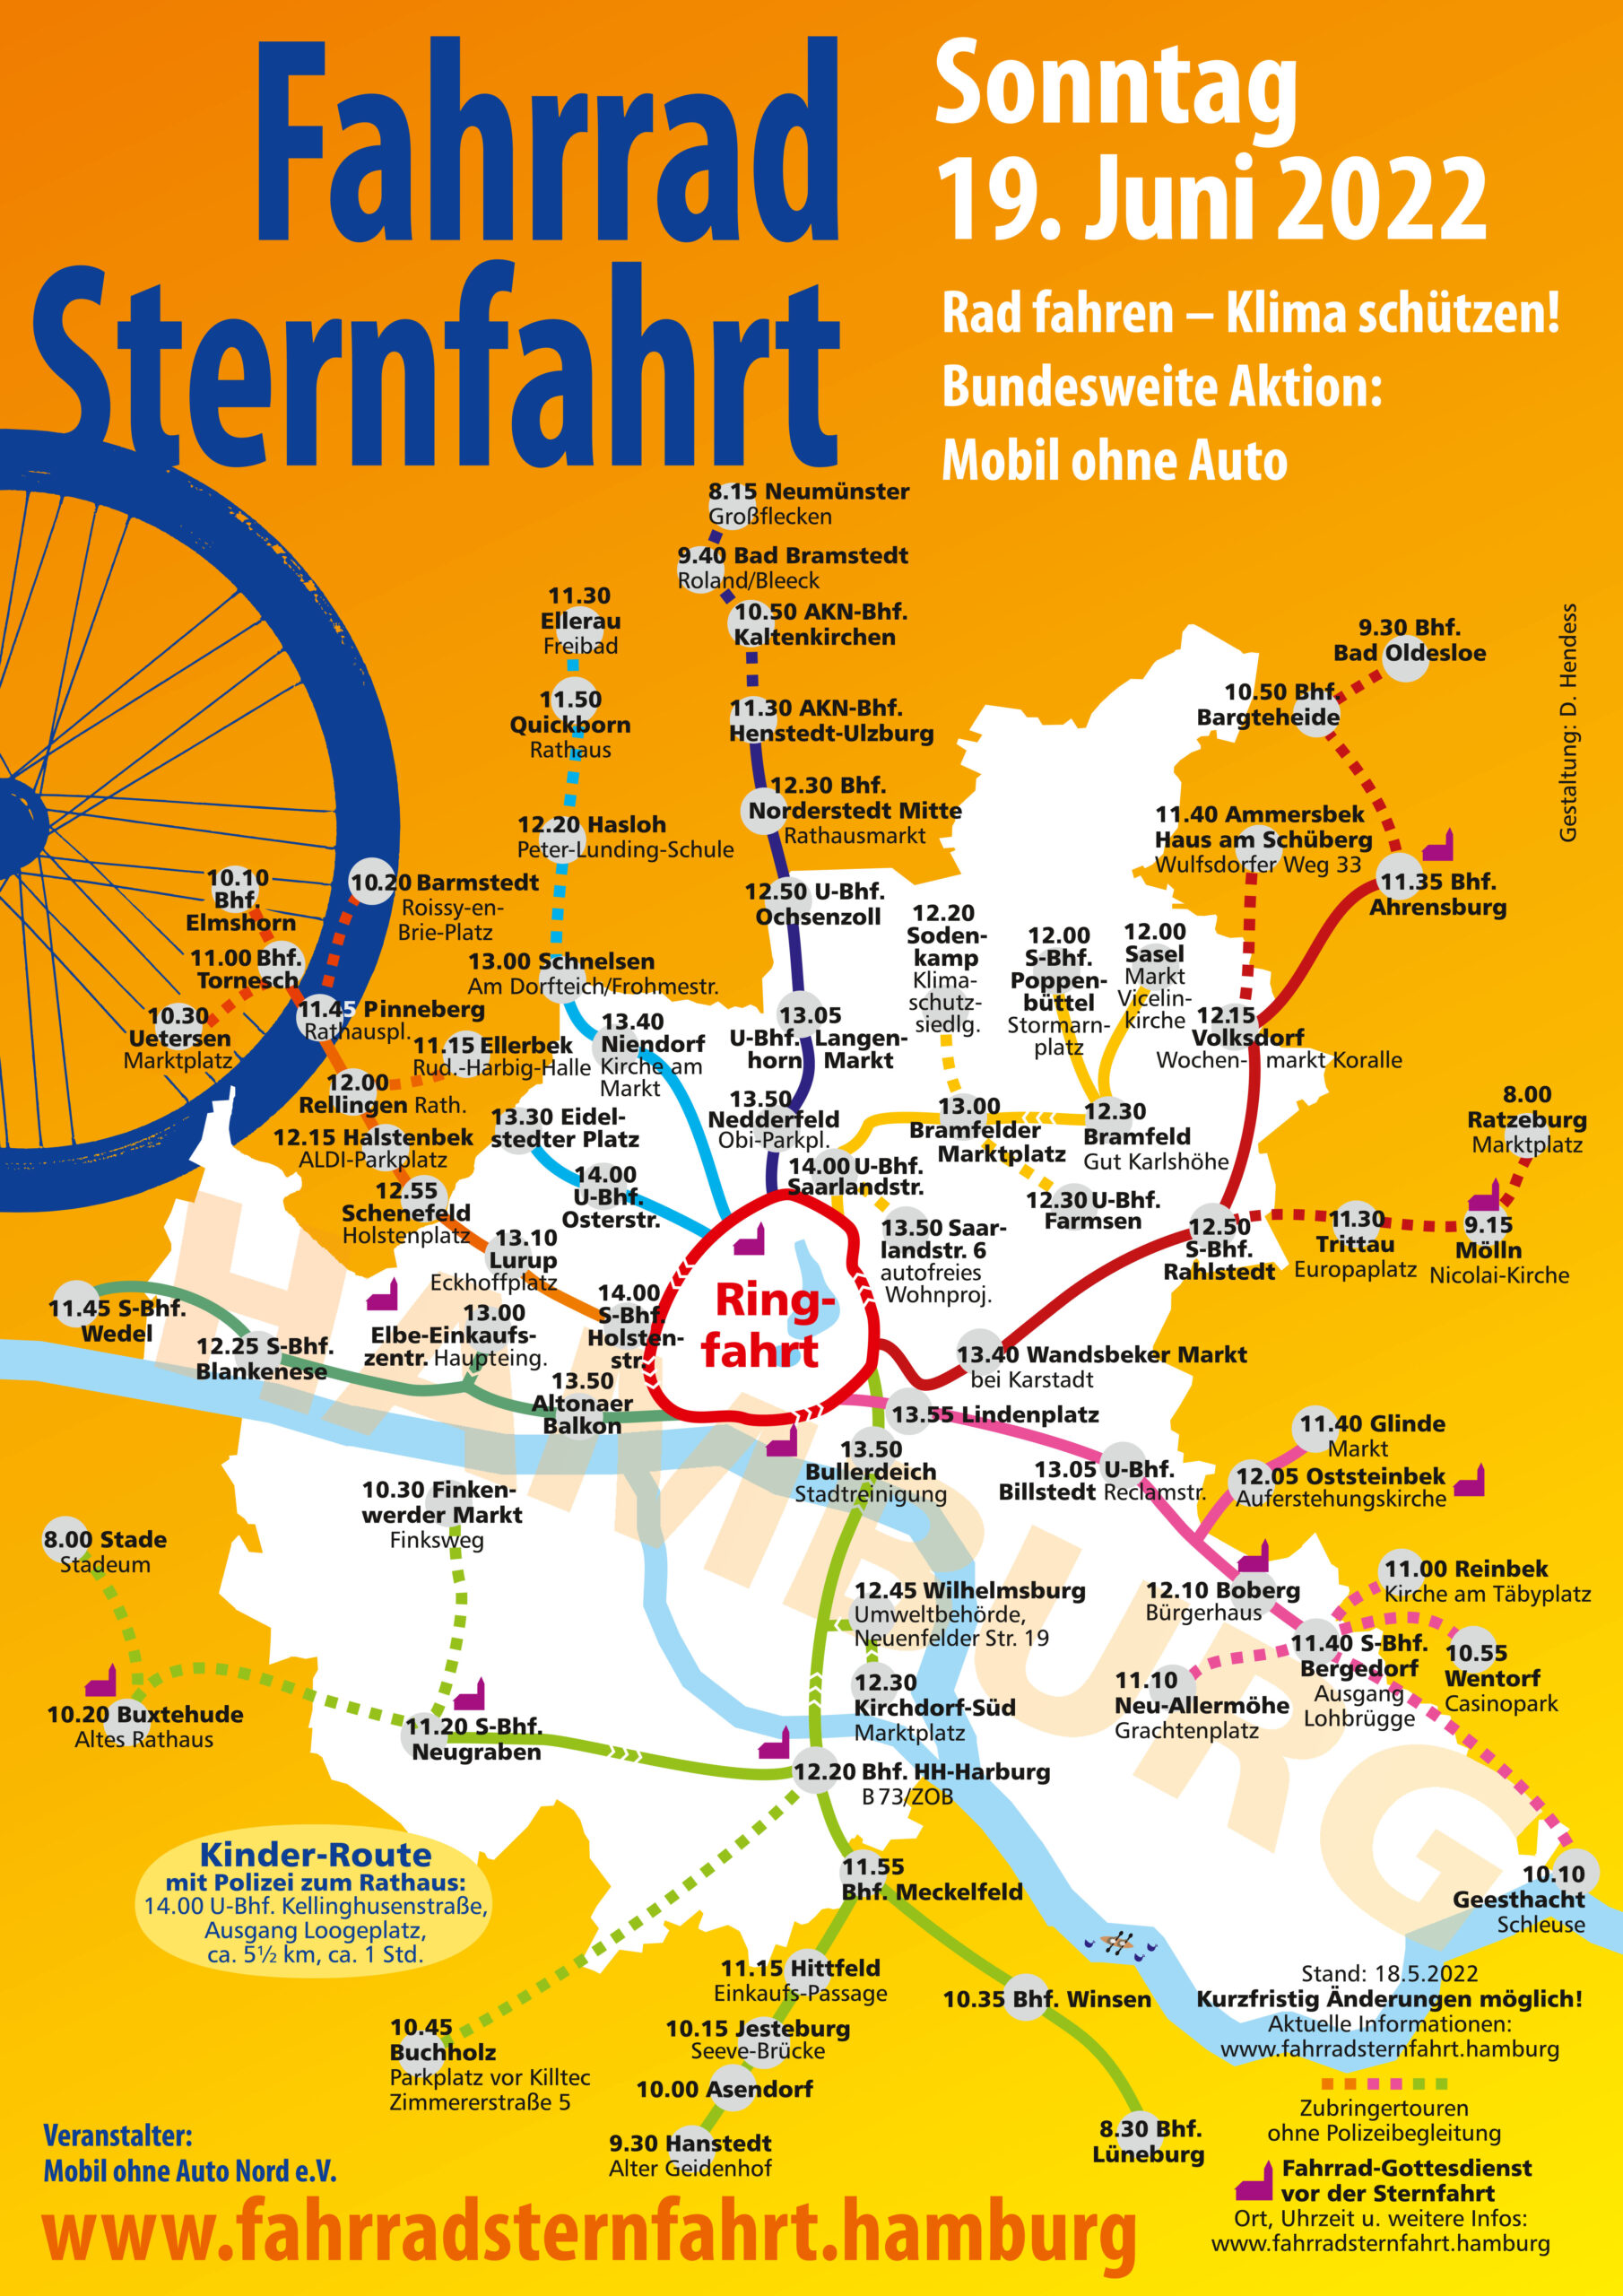 Routenplaner der Fahrradsternfahrt: Stationen in allen Bezirken Hamburgs münden in der Innenstadt